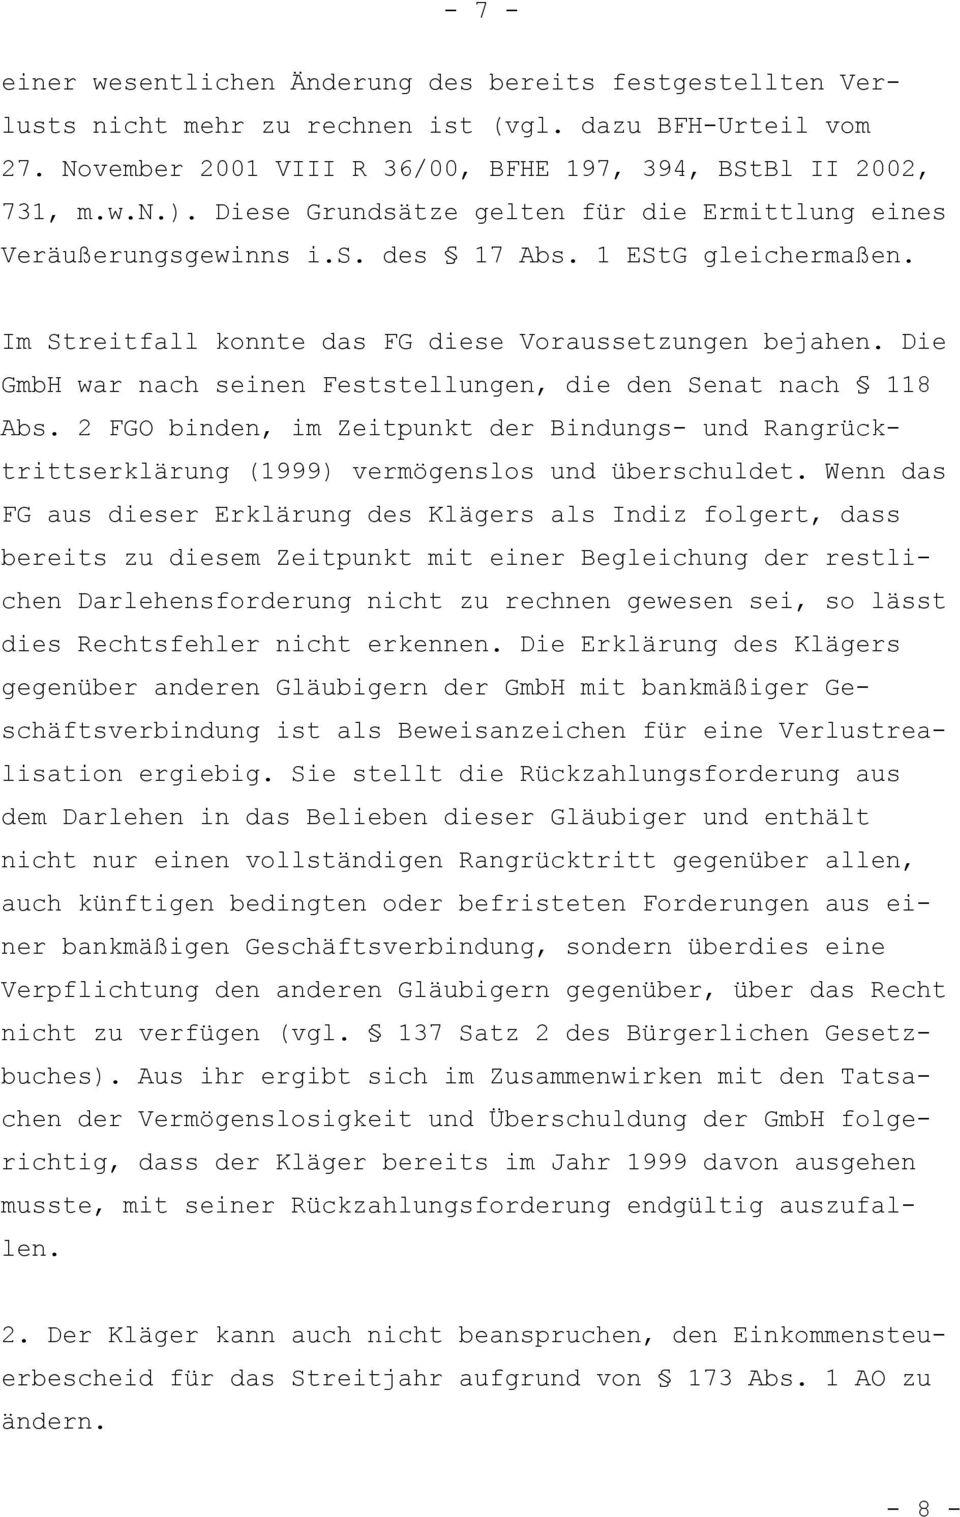 Die GmbH war nach seinen Feststellungen, die den Senat nach 118 Abs. 2 FGO binden, im Zeitpunkt der Bindungs- und Rangrücktrittserklärung (1999) vermögenslos und überschuldet.